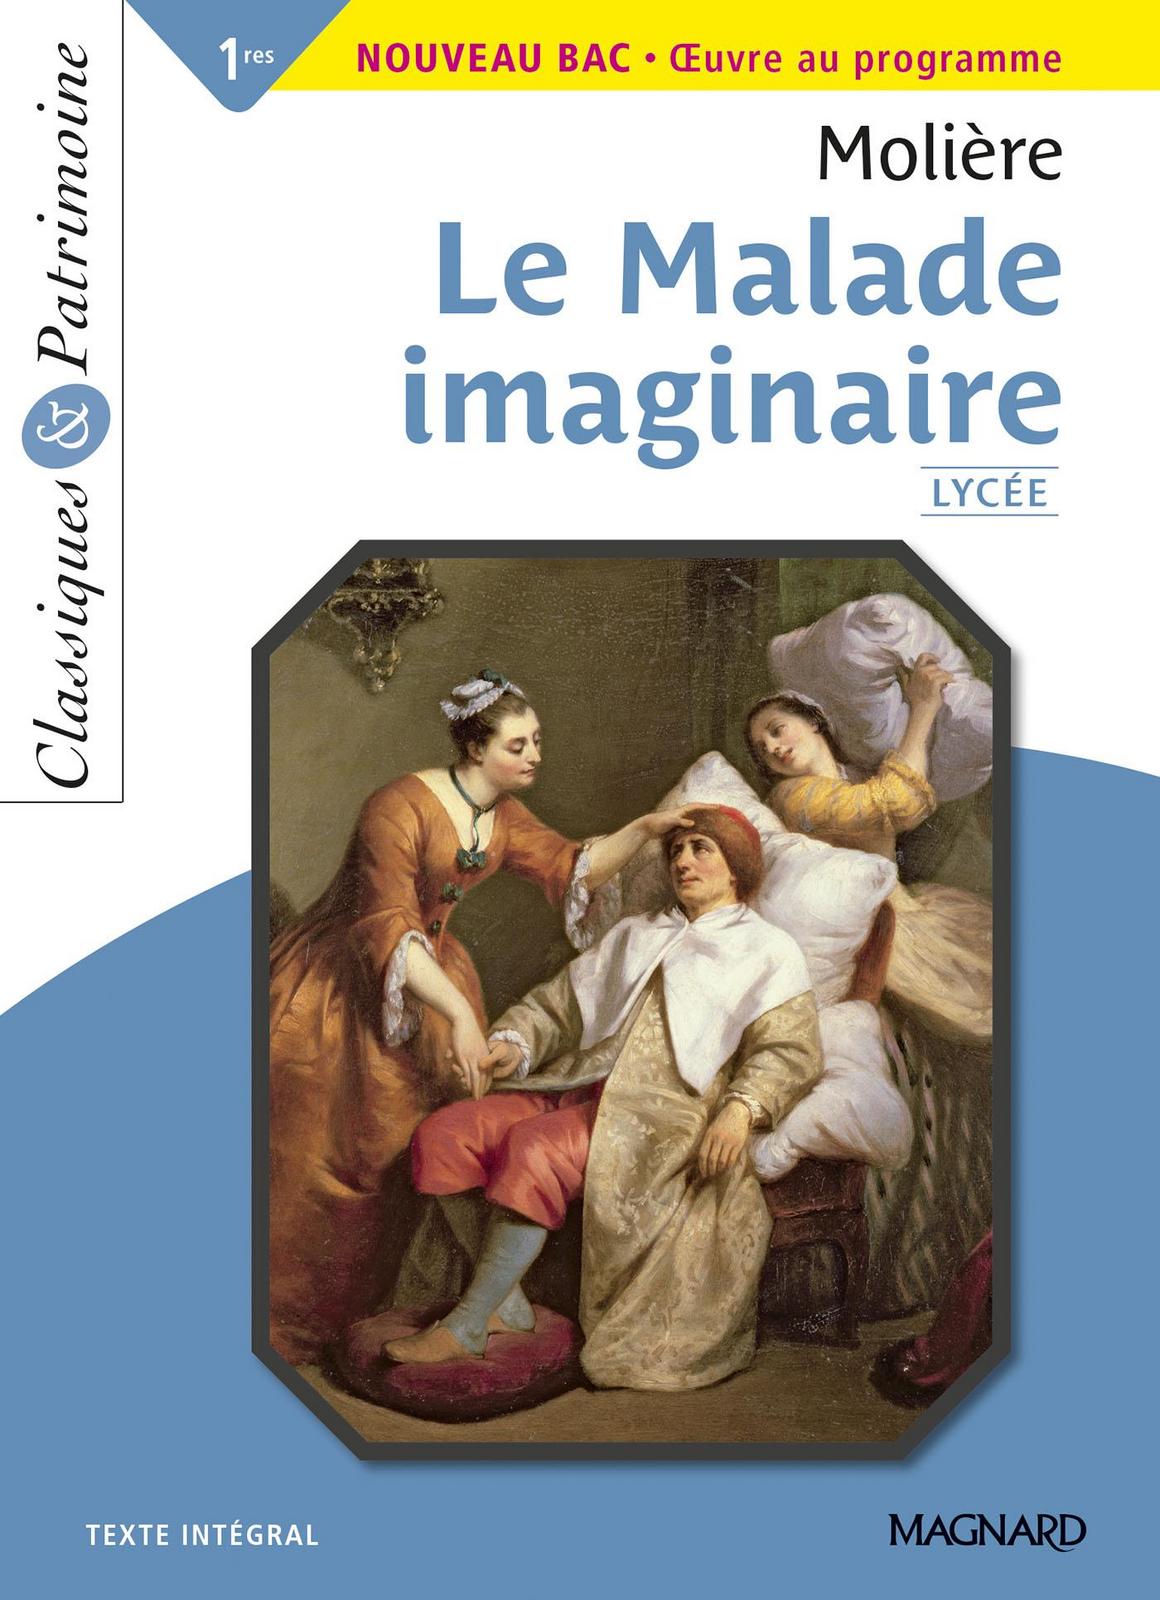 Molière: Le malade imaginaire (French language, 2020)